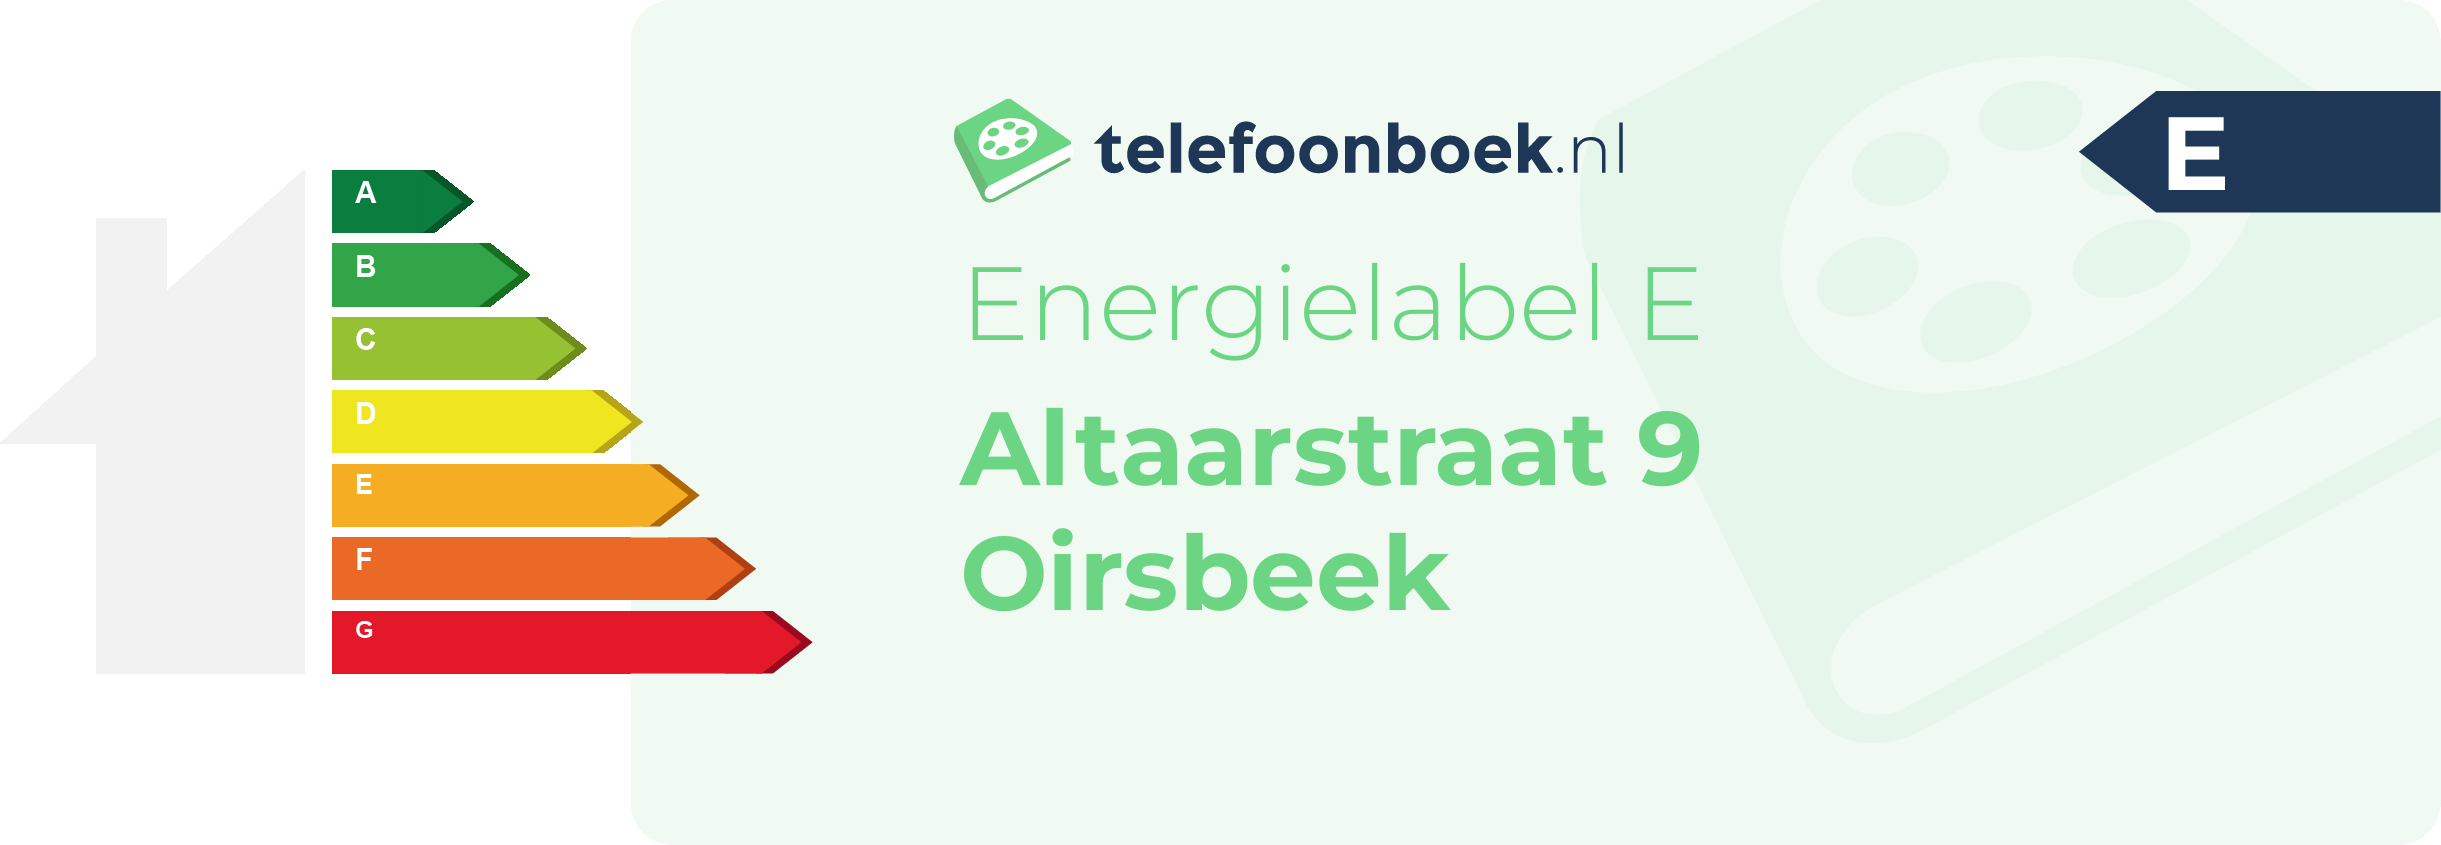 Energielabel Altaarstraat 9 Oirsbeek